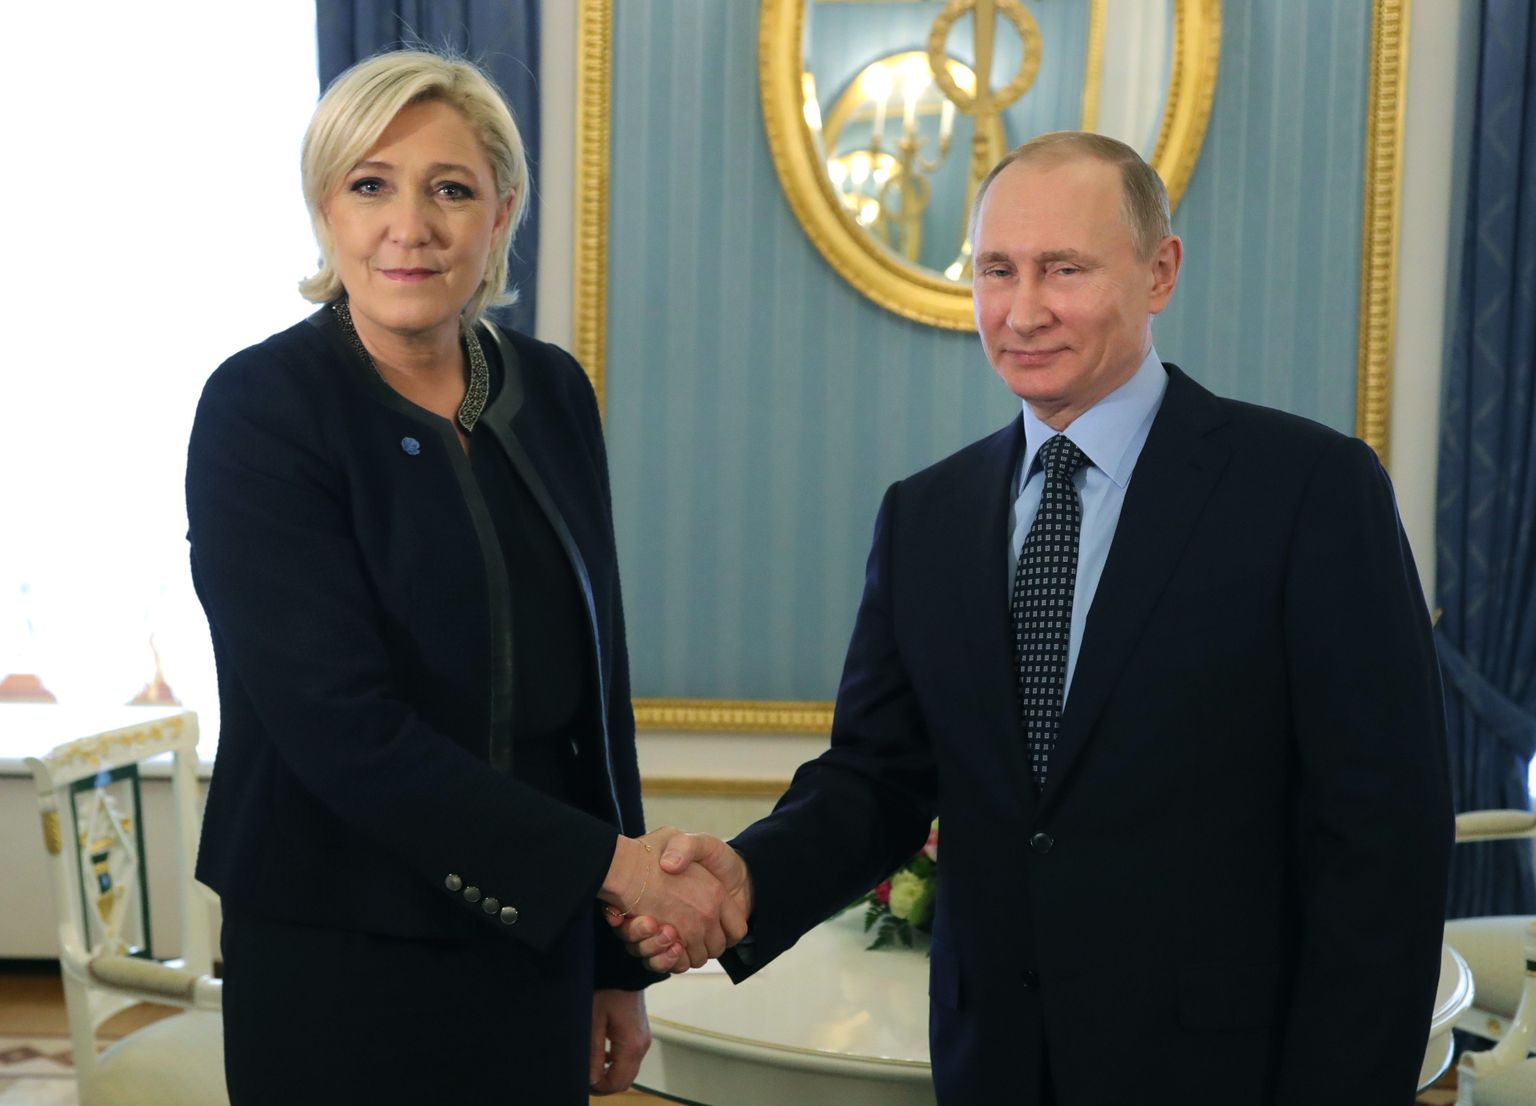 Vene president Vladimir Putin ja Prantsuse presidendikandidaat Marine Le Pen.